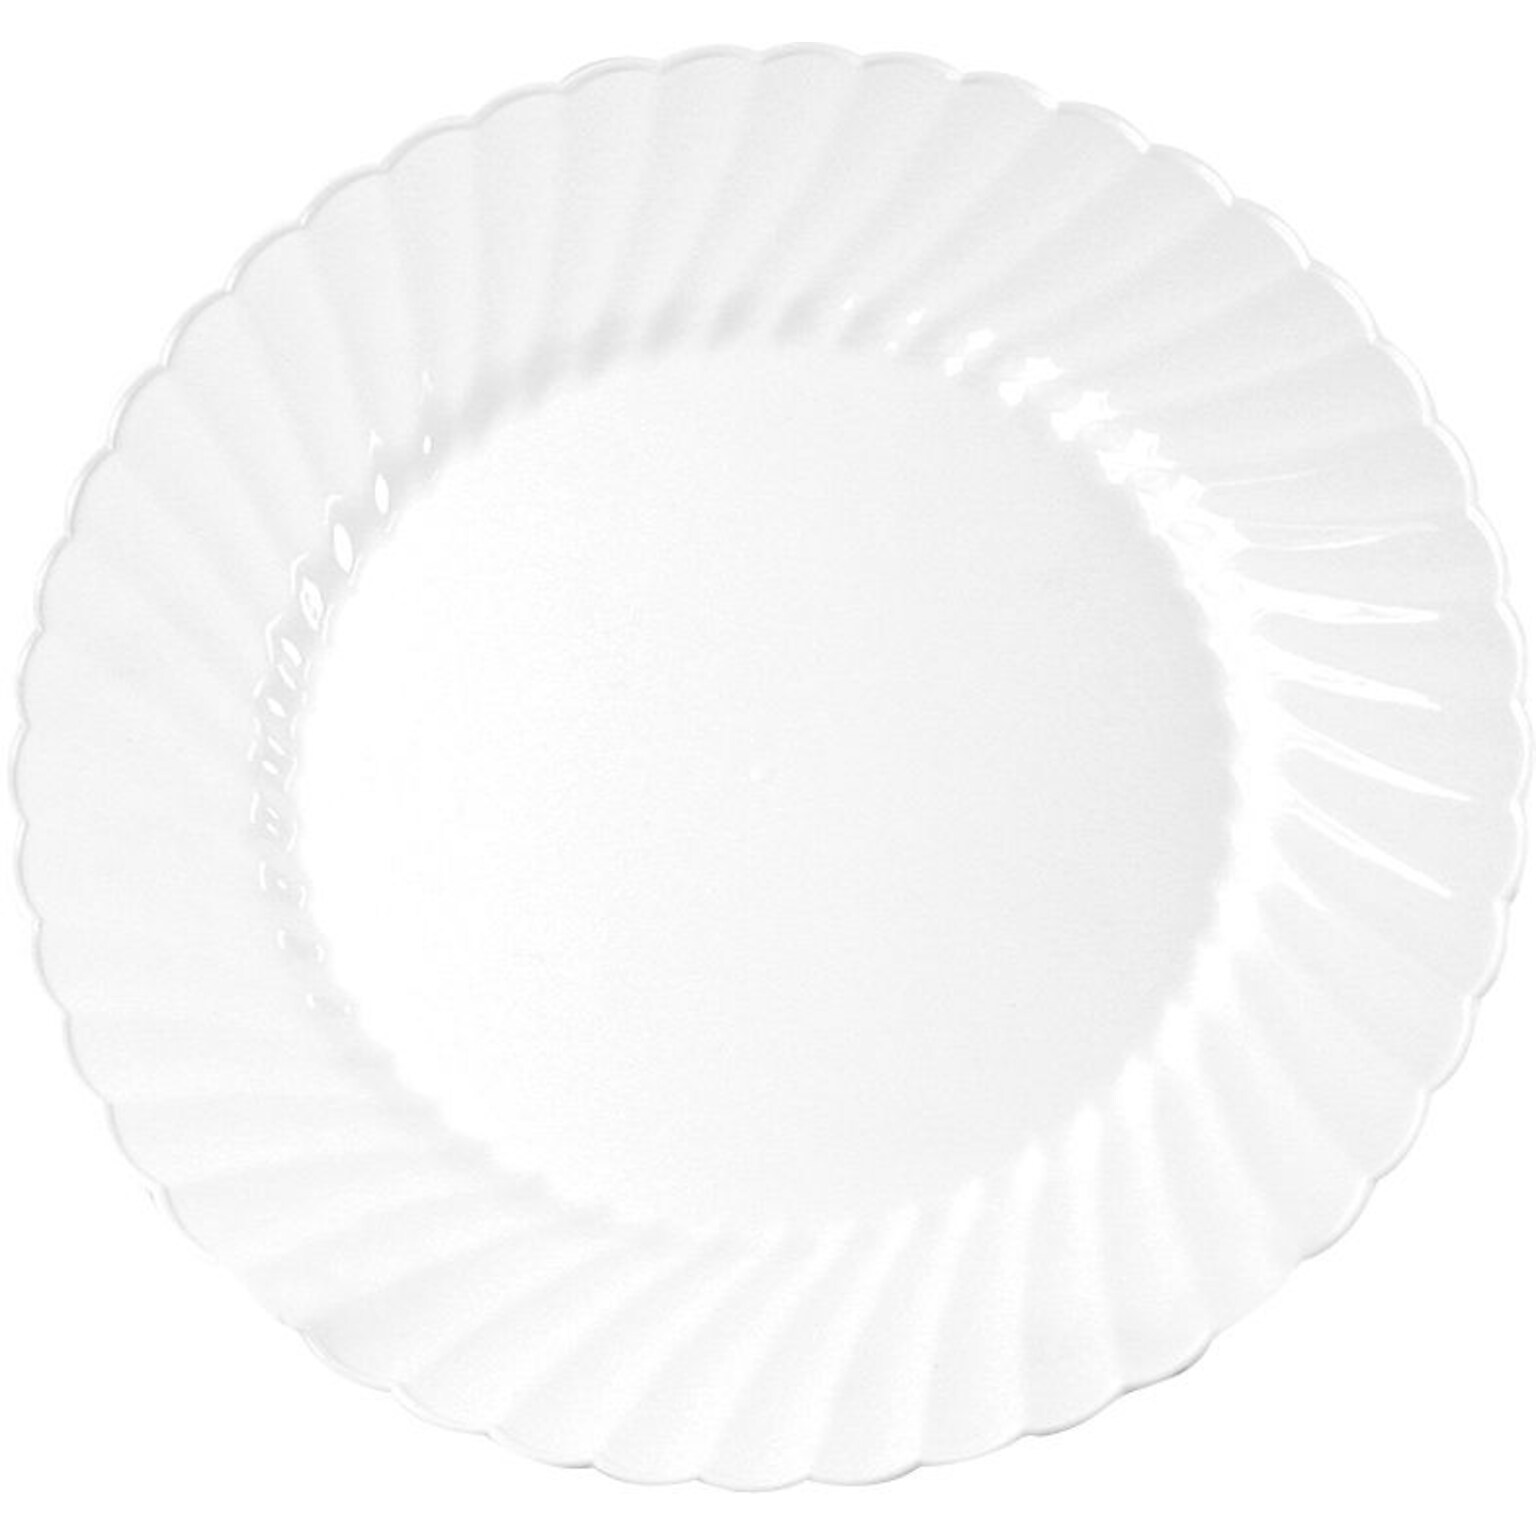 WNA Classicware Plastic Plates, 9, White, 180/Carton (WNACW9180W)